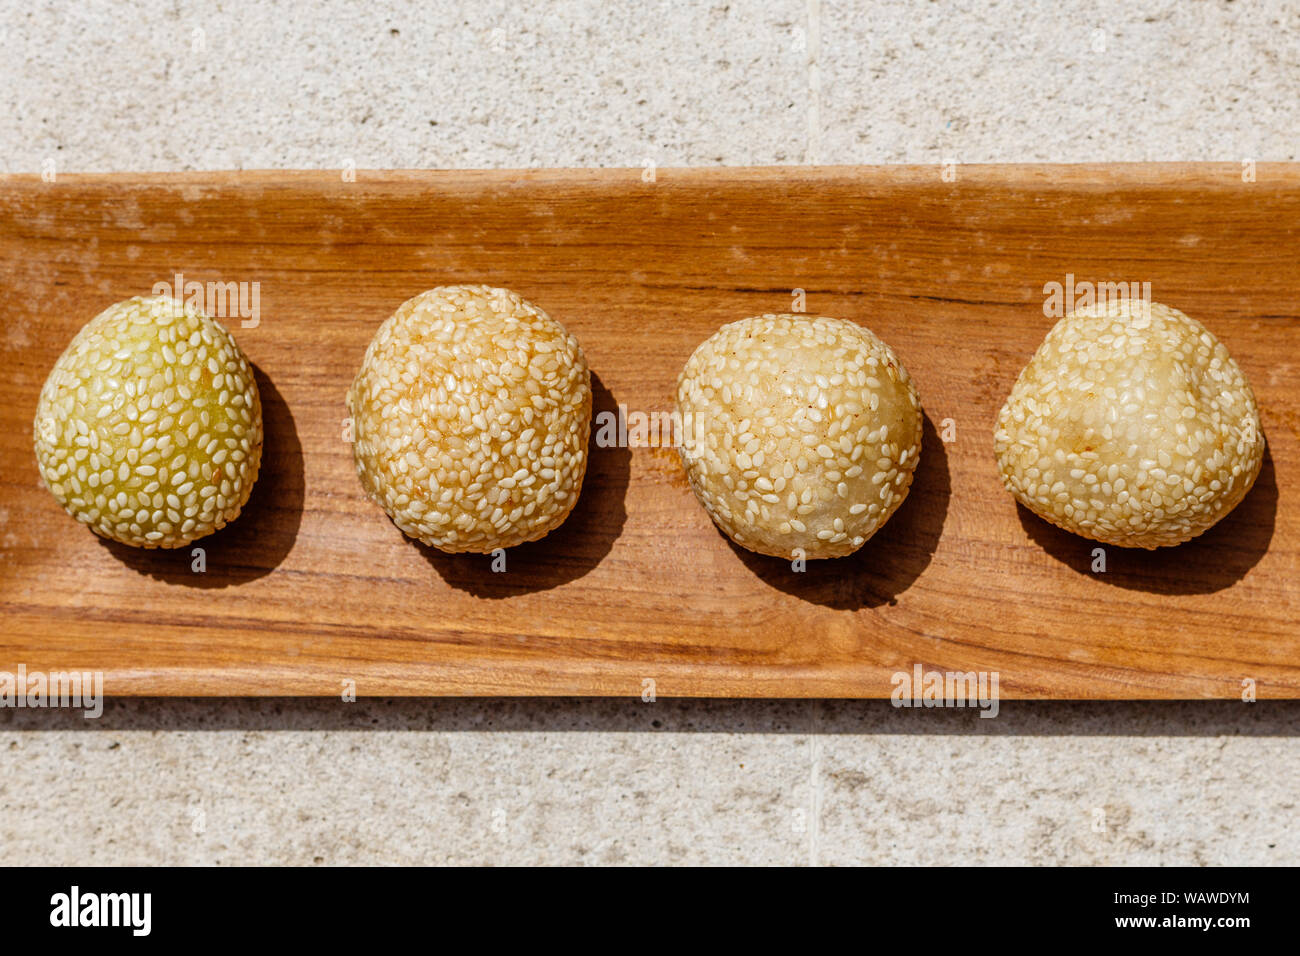 Onde-ondhe ondhe-onde (riz), boules de fleur recouvert de graines de sésame avec de la poudre de haricots verts ou riz gluant noir à l'intérieur. Dessert traditionnel indonésien. Banque D'Images